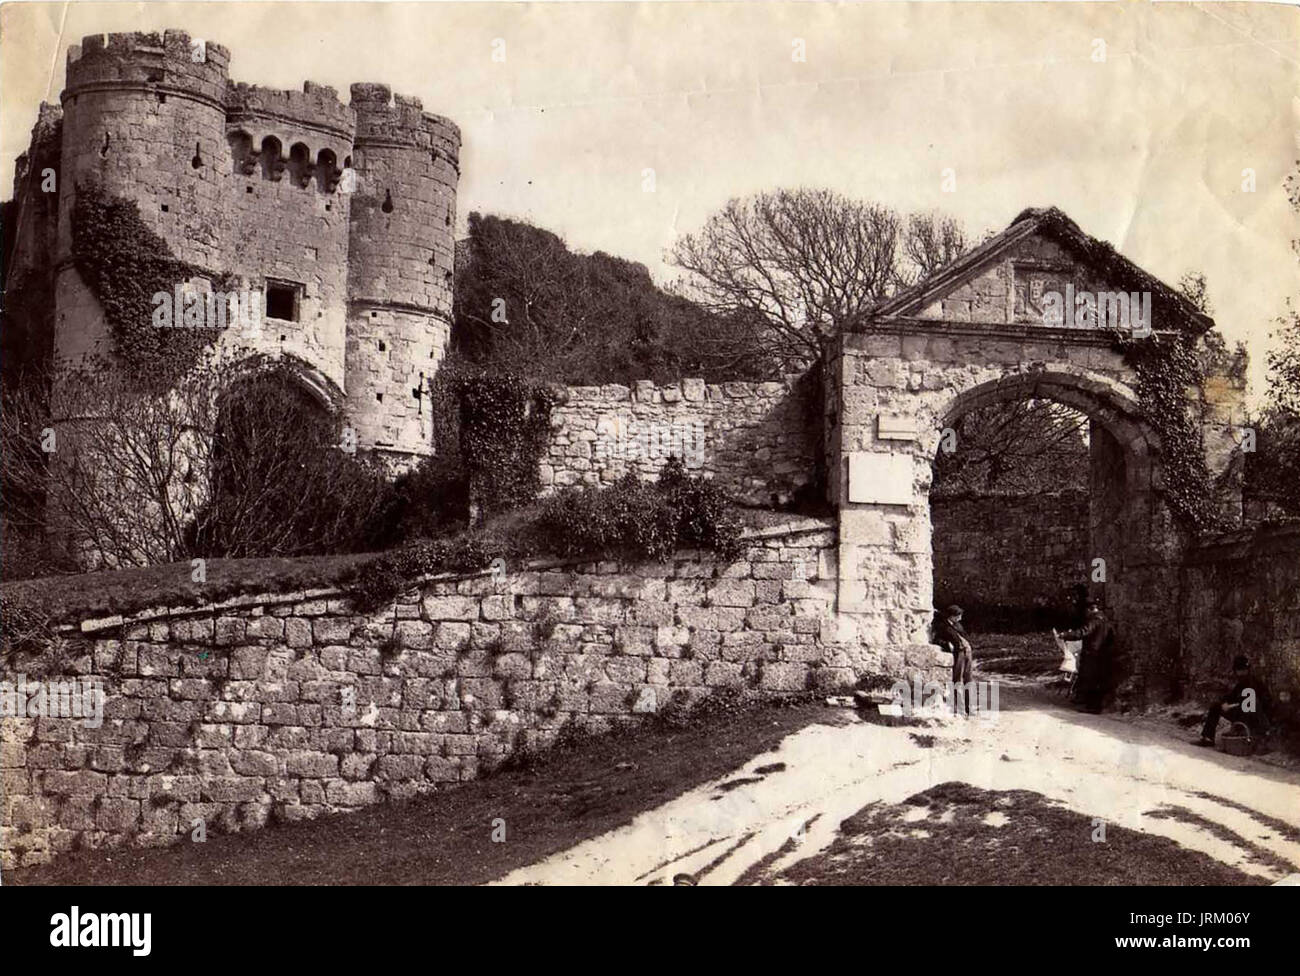 1890 albume vittoriano fotografia topografica del castello di Carisbrooke, Isle of Wight - Ingresso e Gatehouse Foto Stock